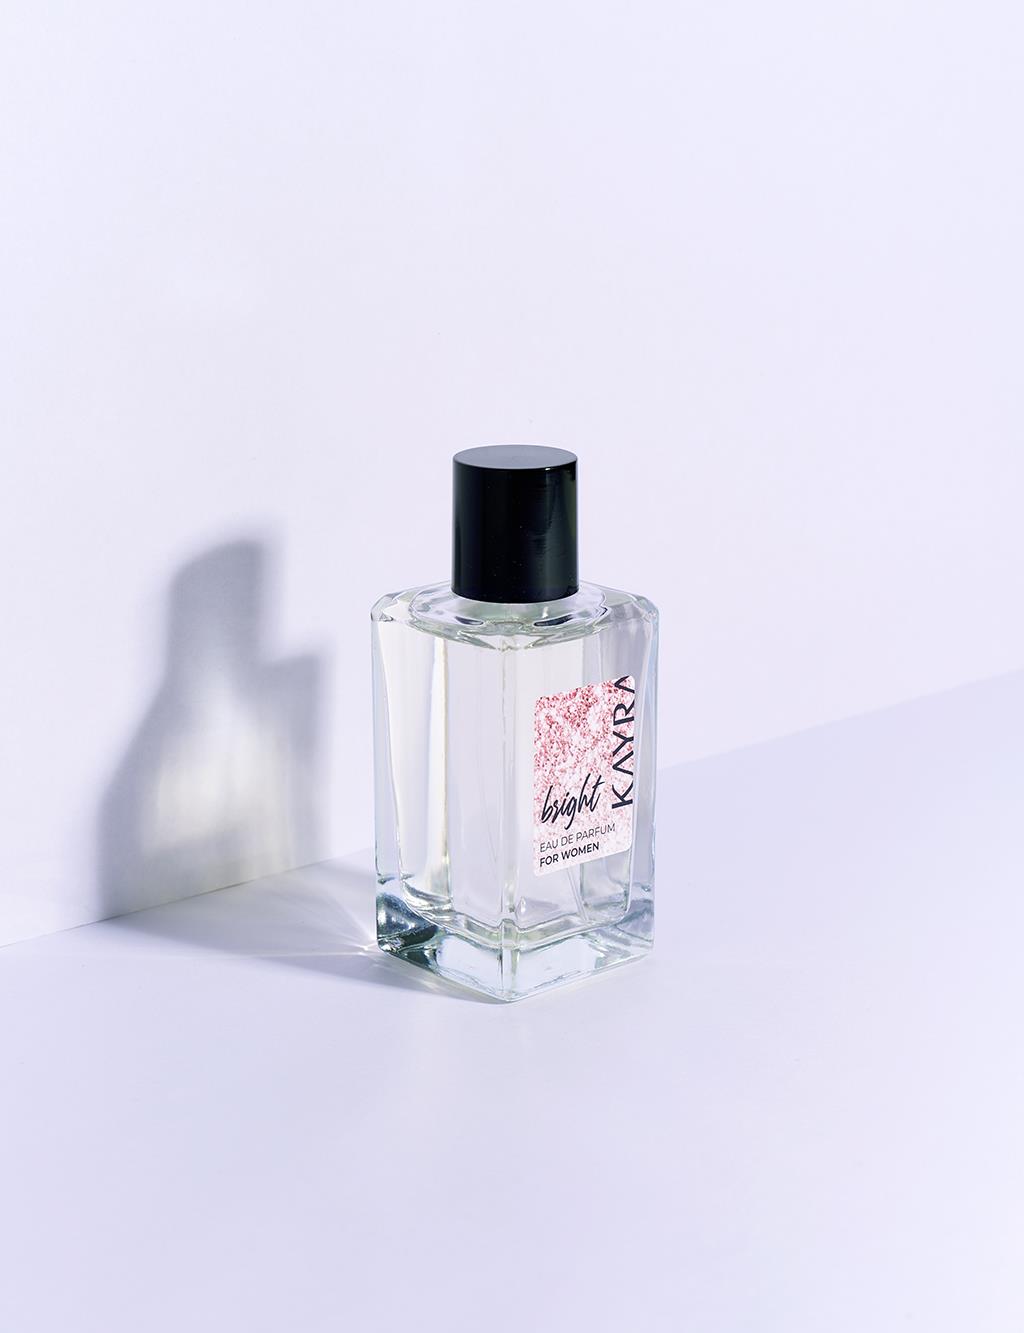 Bright Women's Perfume